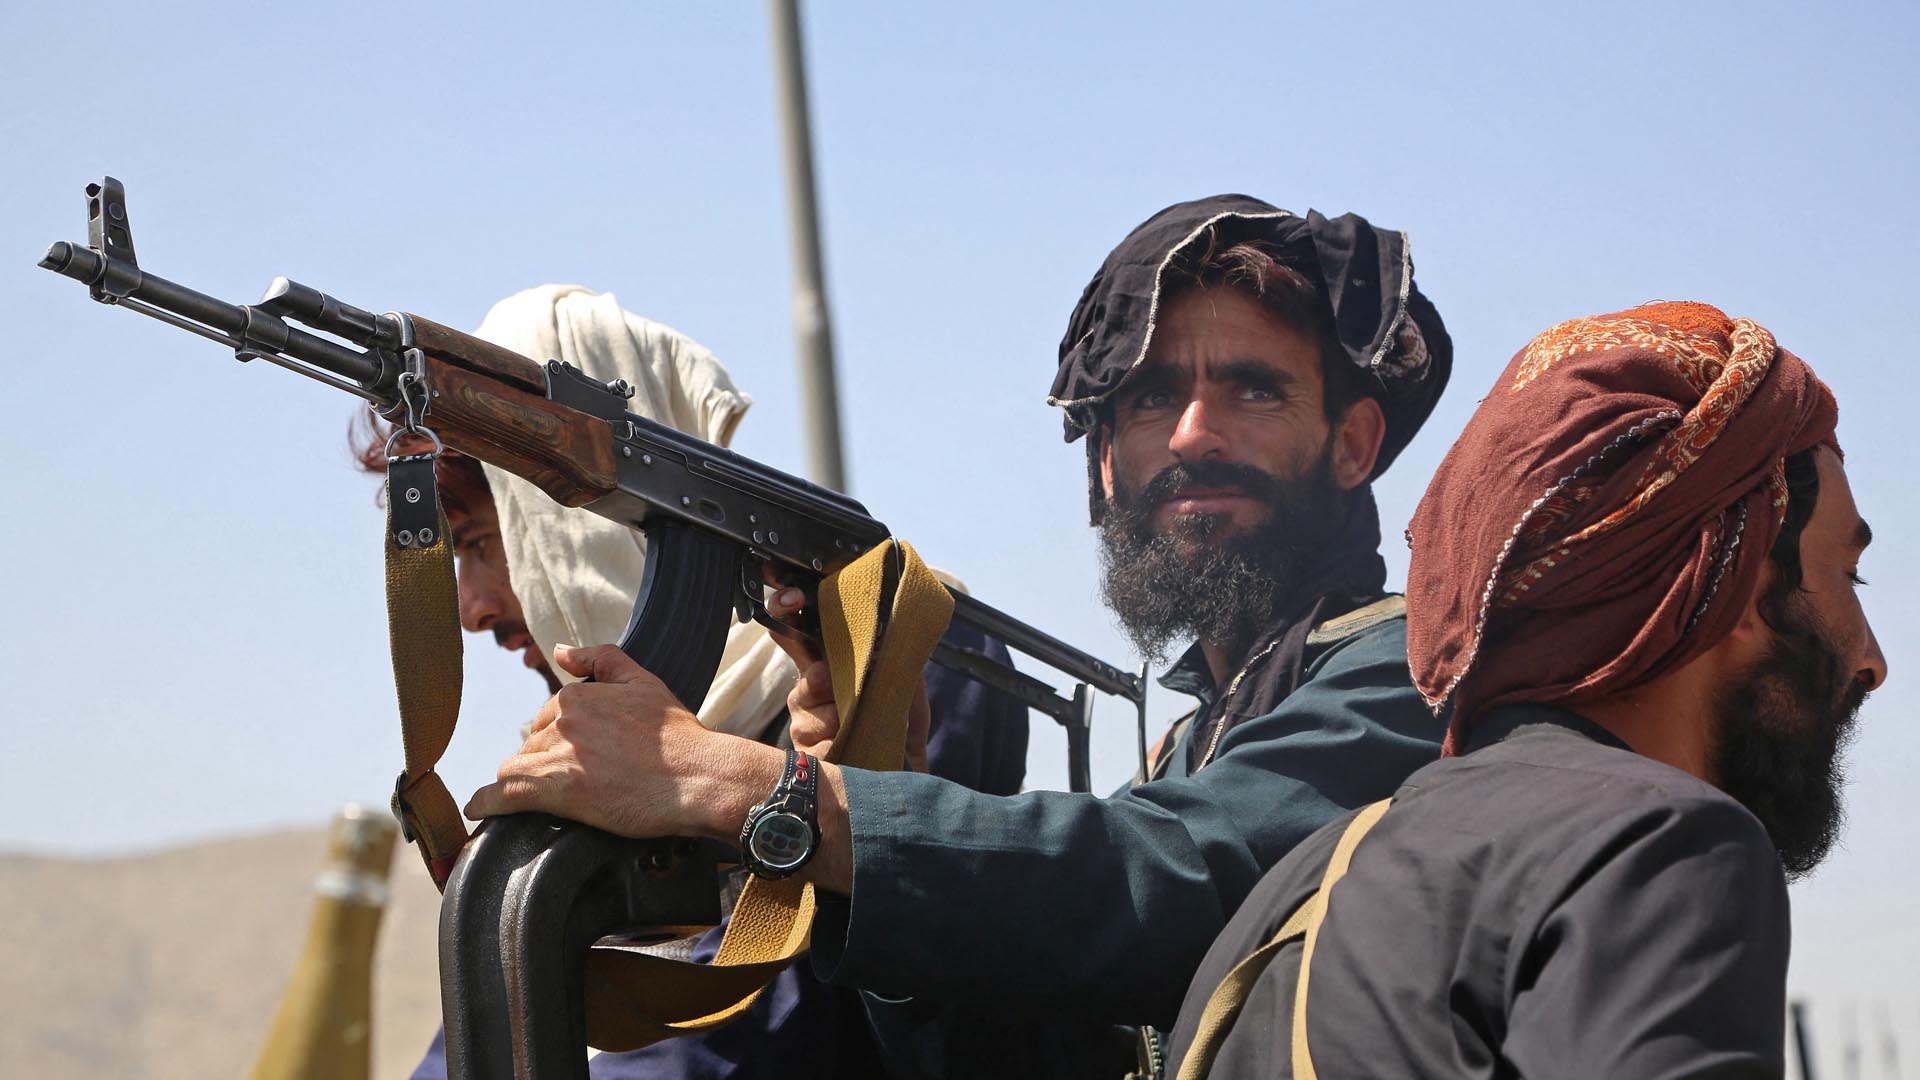 Claves para entender el conflicto en Afganistán: los talibanes recuperan el poder 20 años después